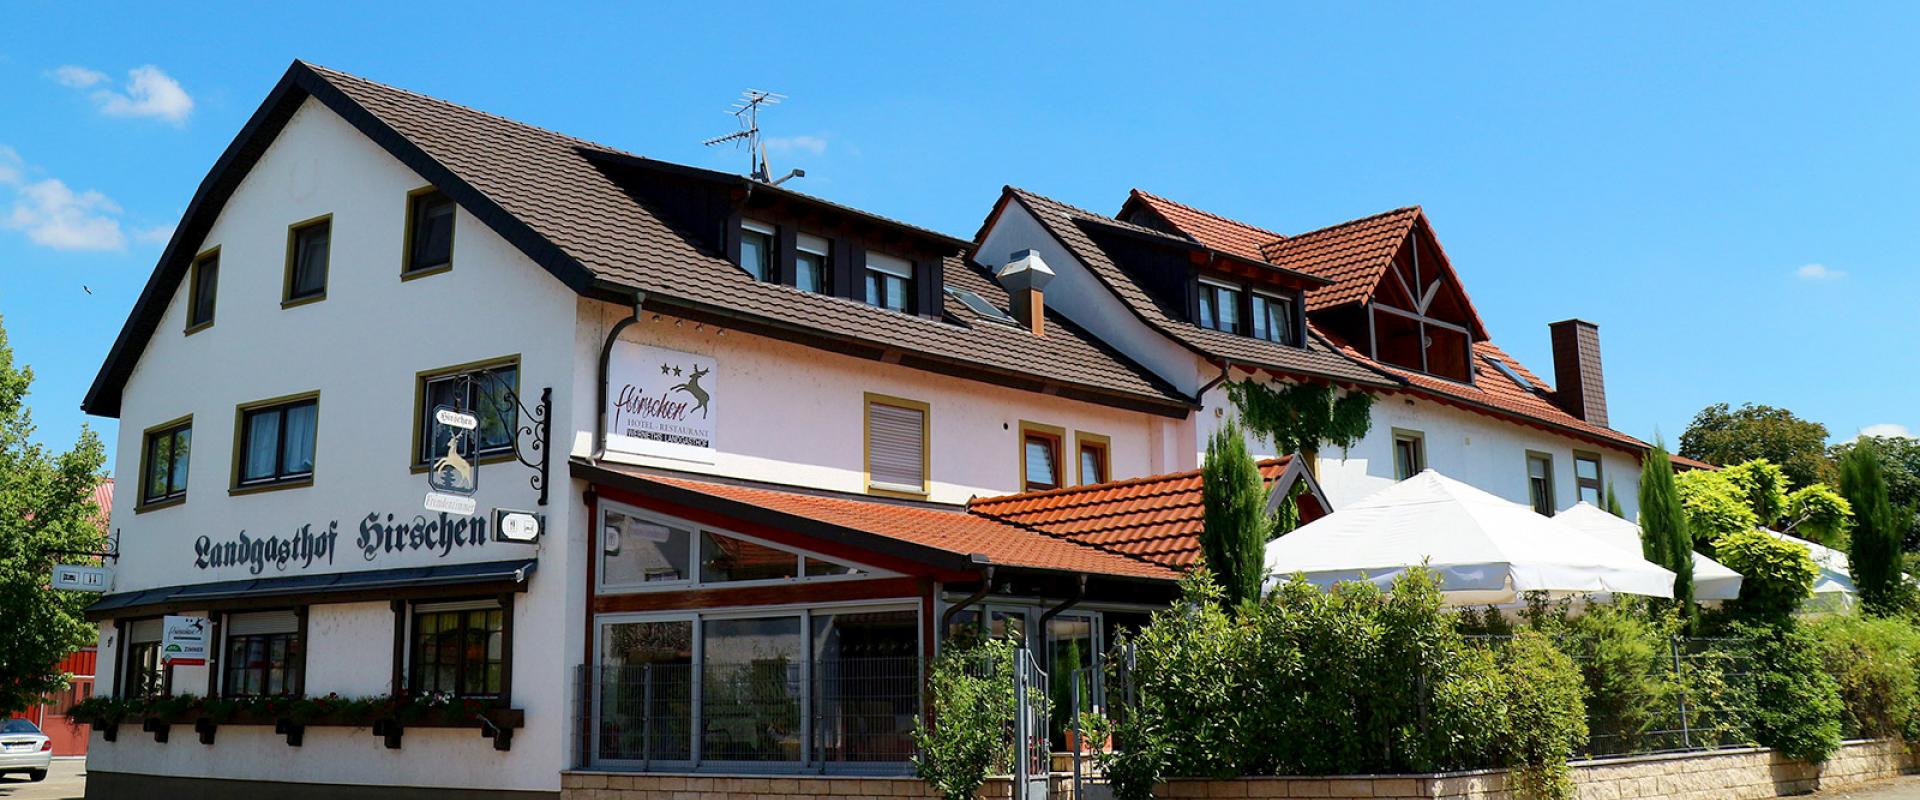 11463 Motorrad Hotel Werneths Landgasthof Hirschen im Schwarzwald.jpg.jpg